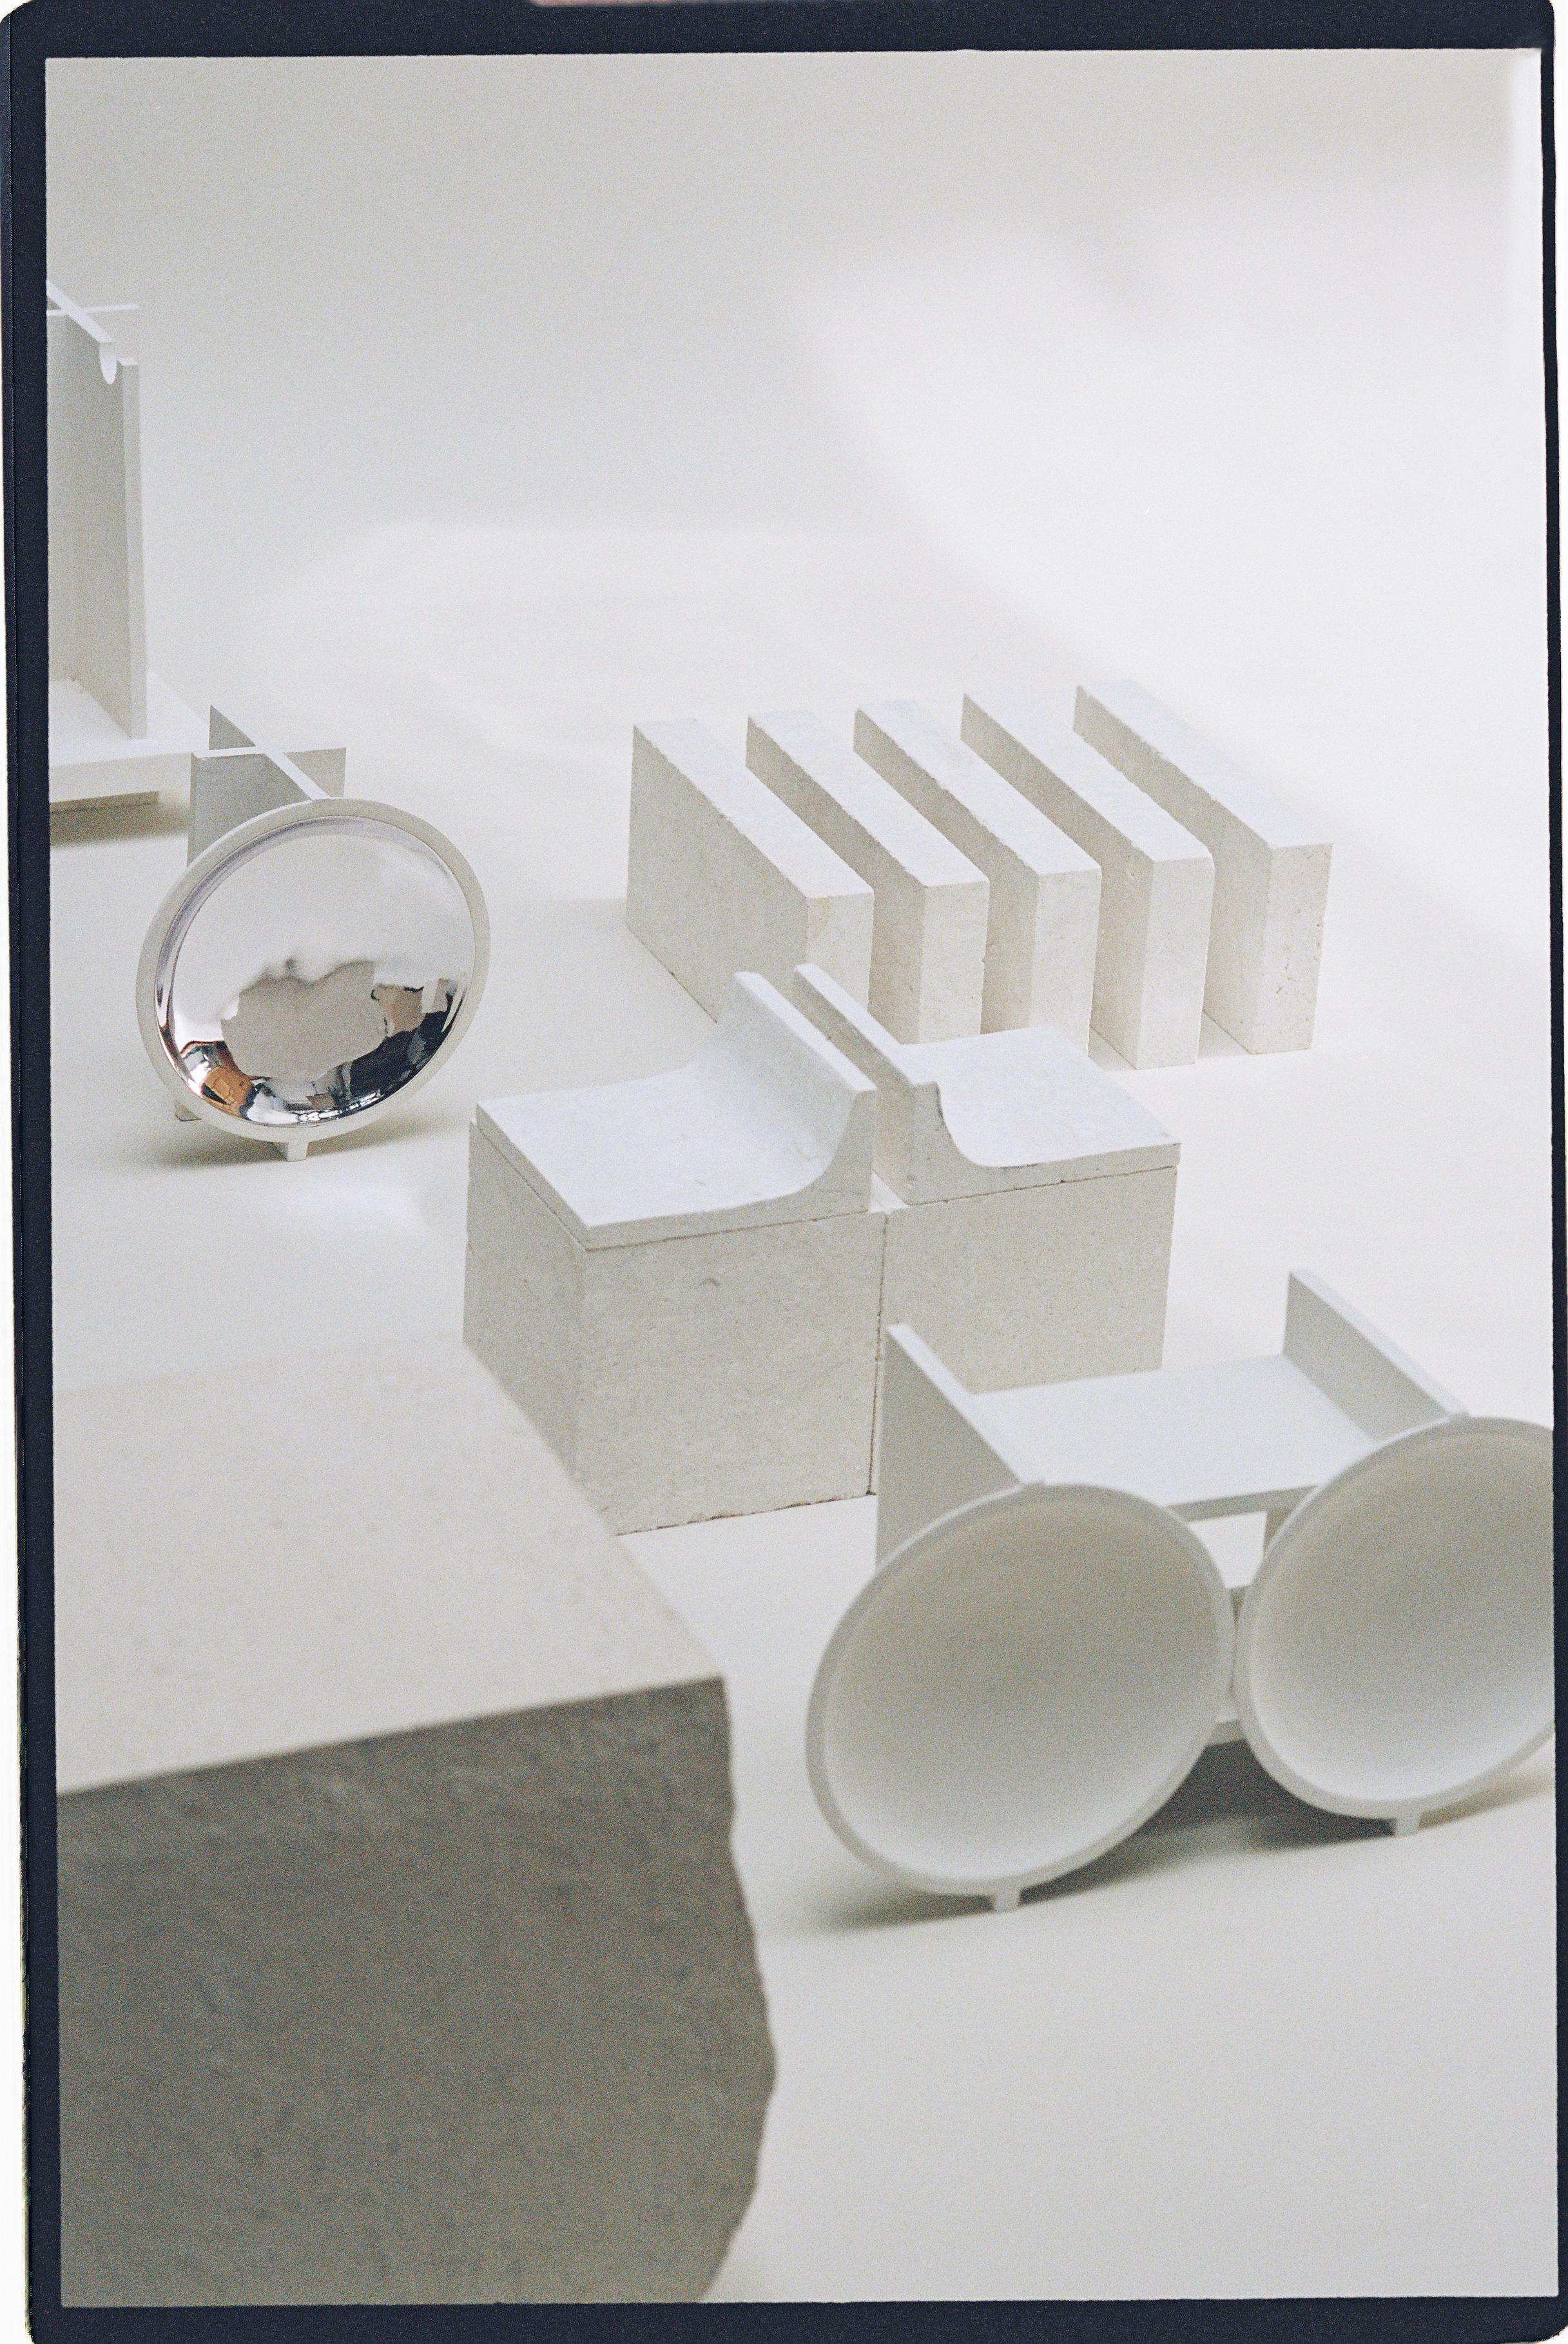 Contemporary Set of 2 Arecibo Objects Cosmos Awarness Program by Turbina